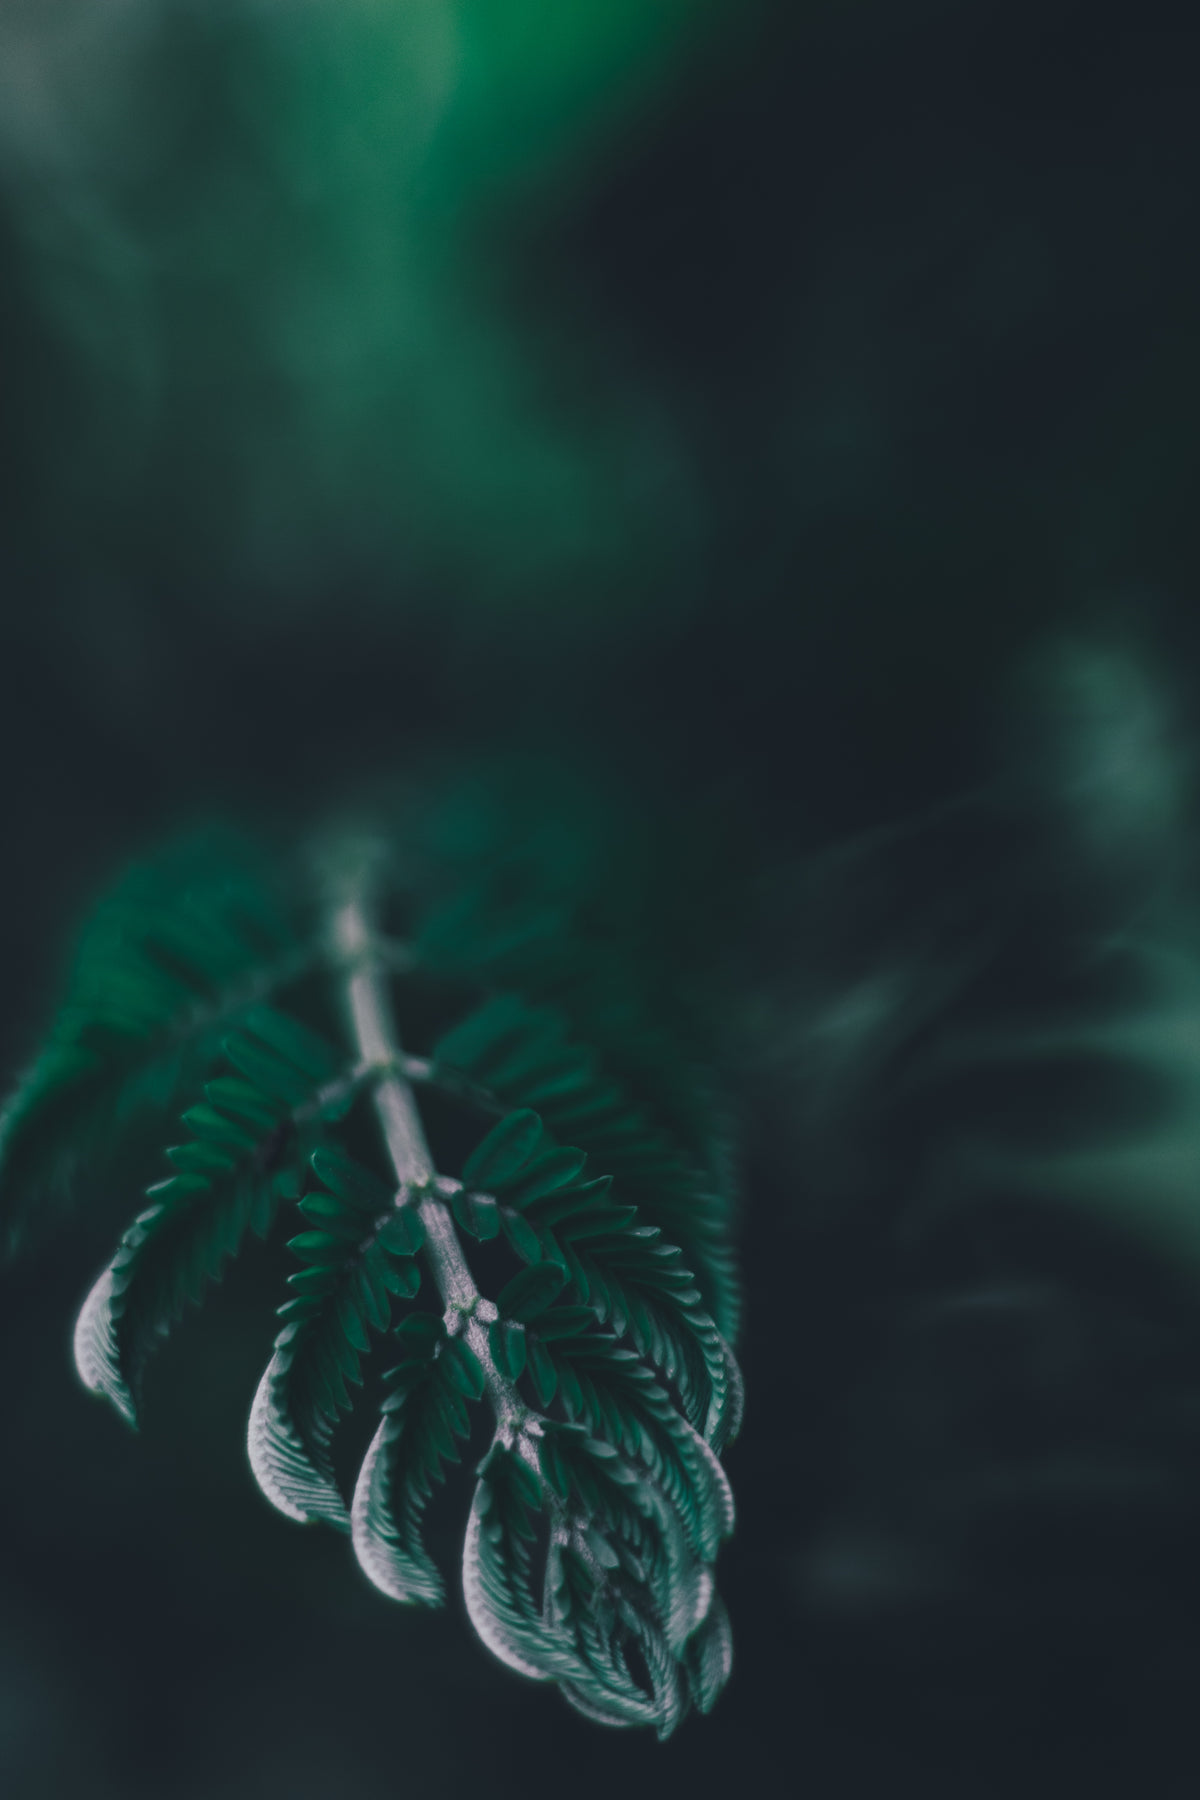 close up of fern leaf under shadows